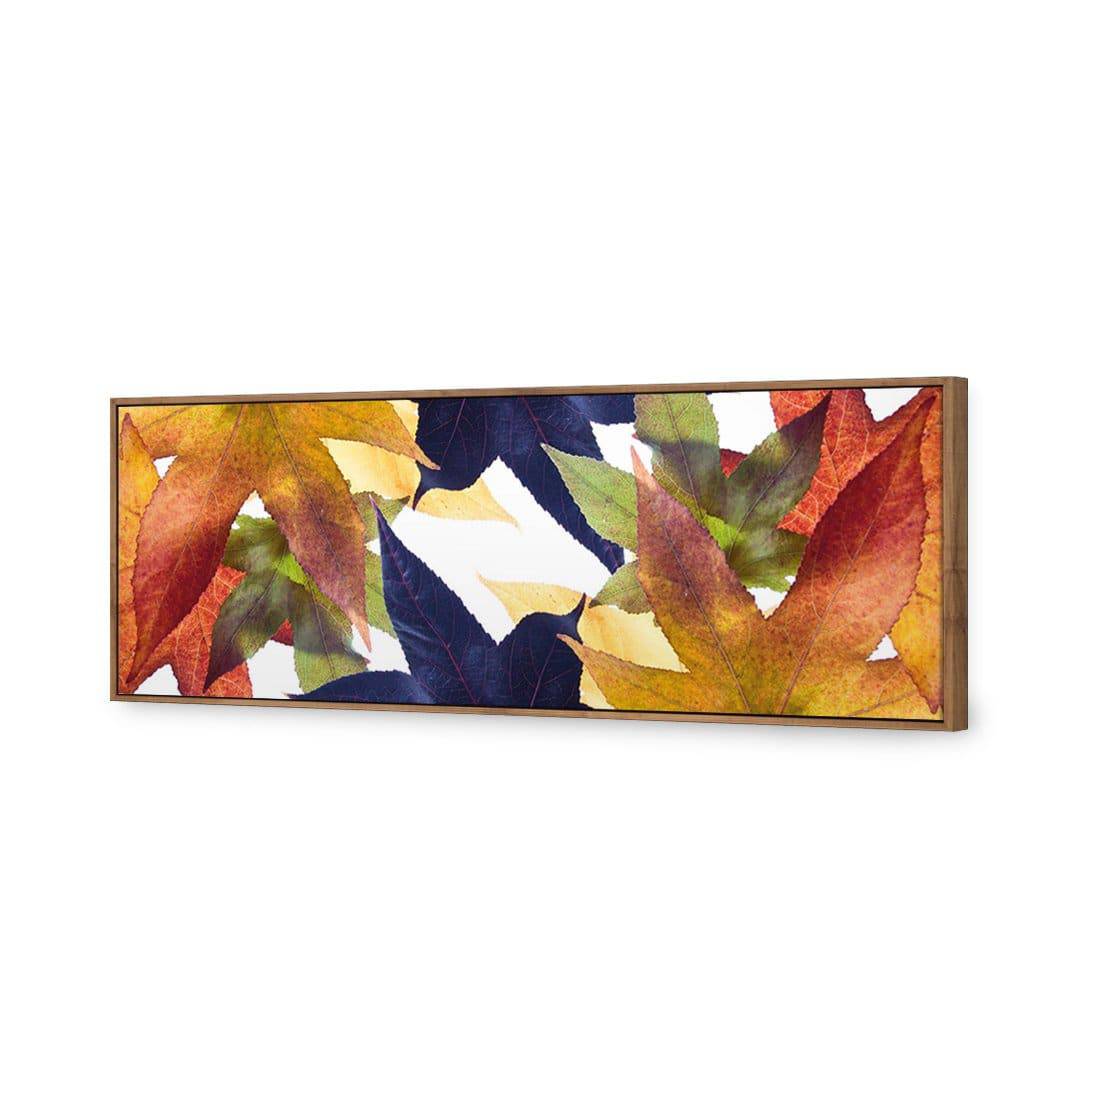 Leaf Kaleidoscope Canvas Art-Canvas-Wall Art Designs-60x20cm-Canvas - Natural Frame-Wall Art Designs